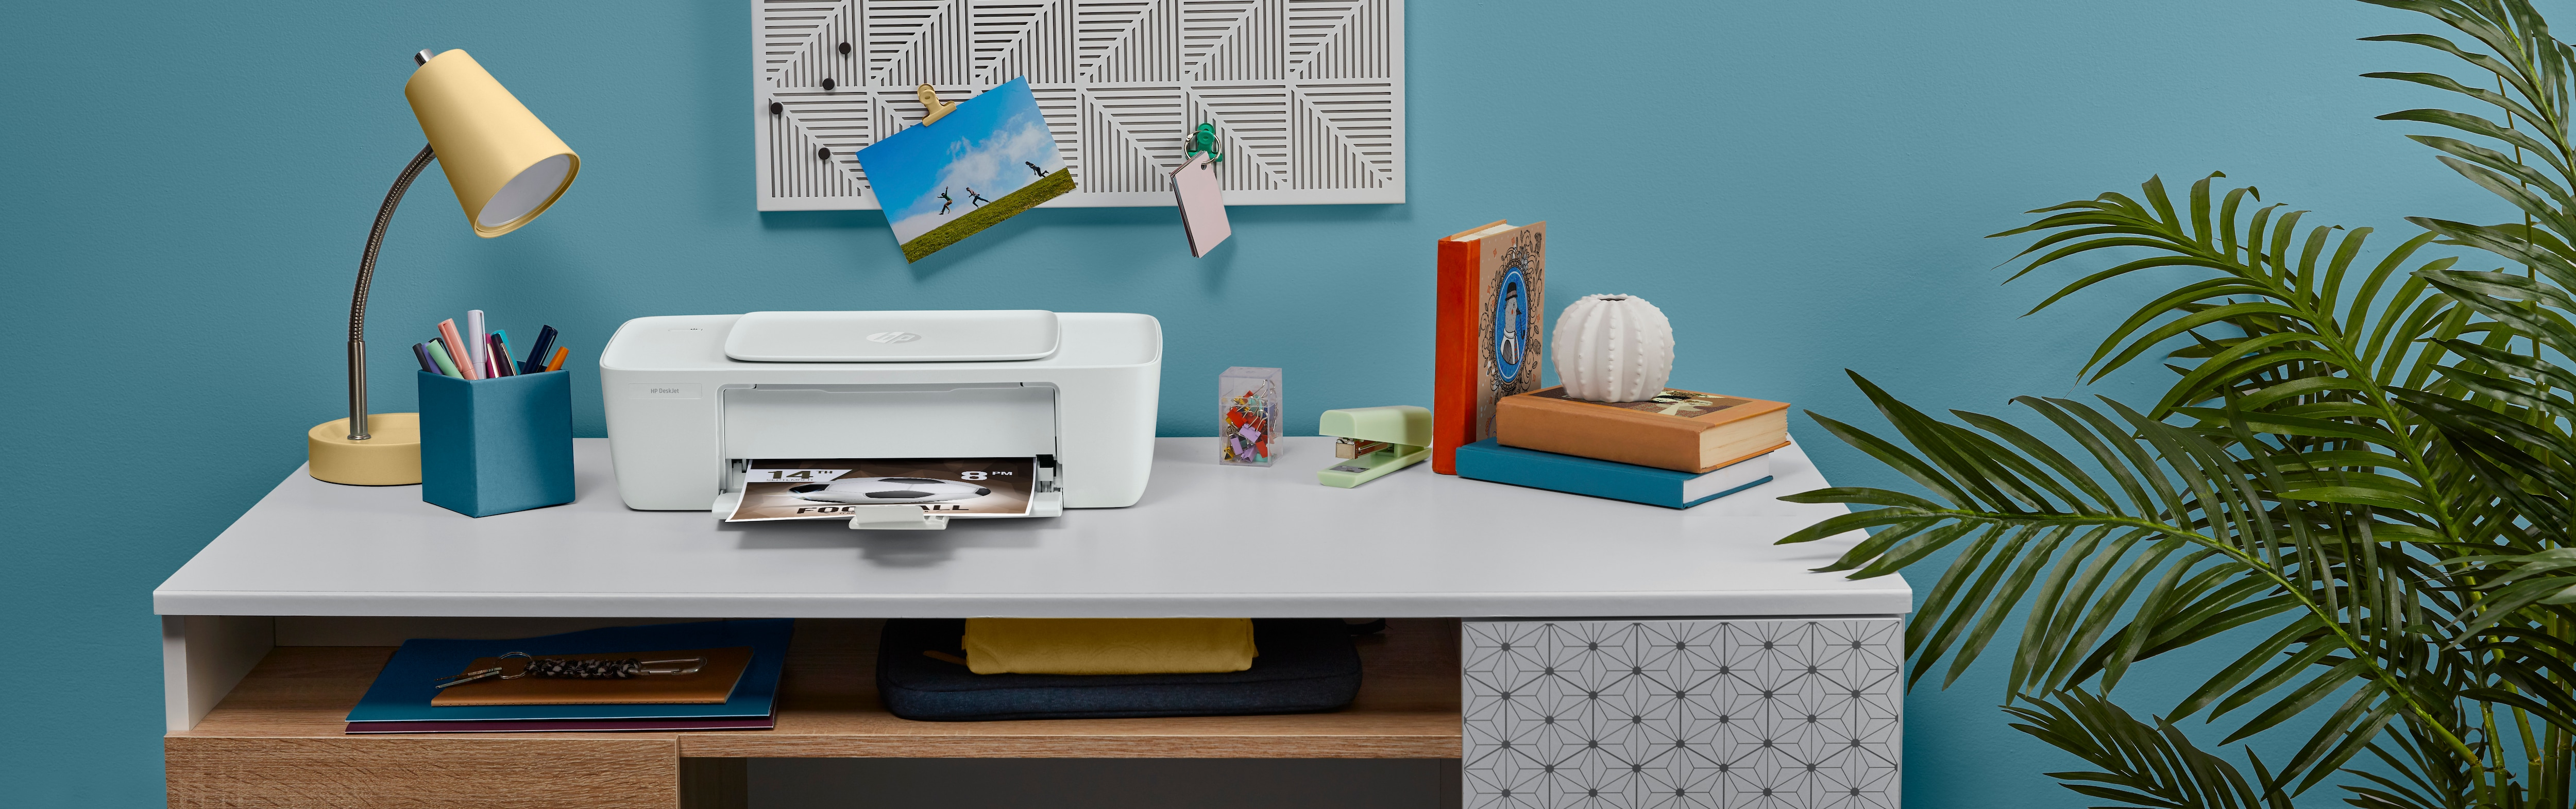 Multifunzione HP DeskJet 2320 All-in-One Printer, Color, Stampante per Home, Stampa, copia, scansione, scansione verso PDF [7WN42B]